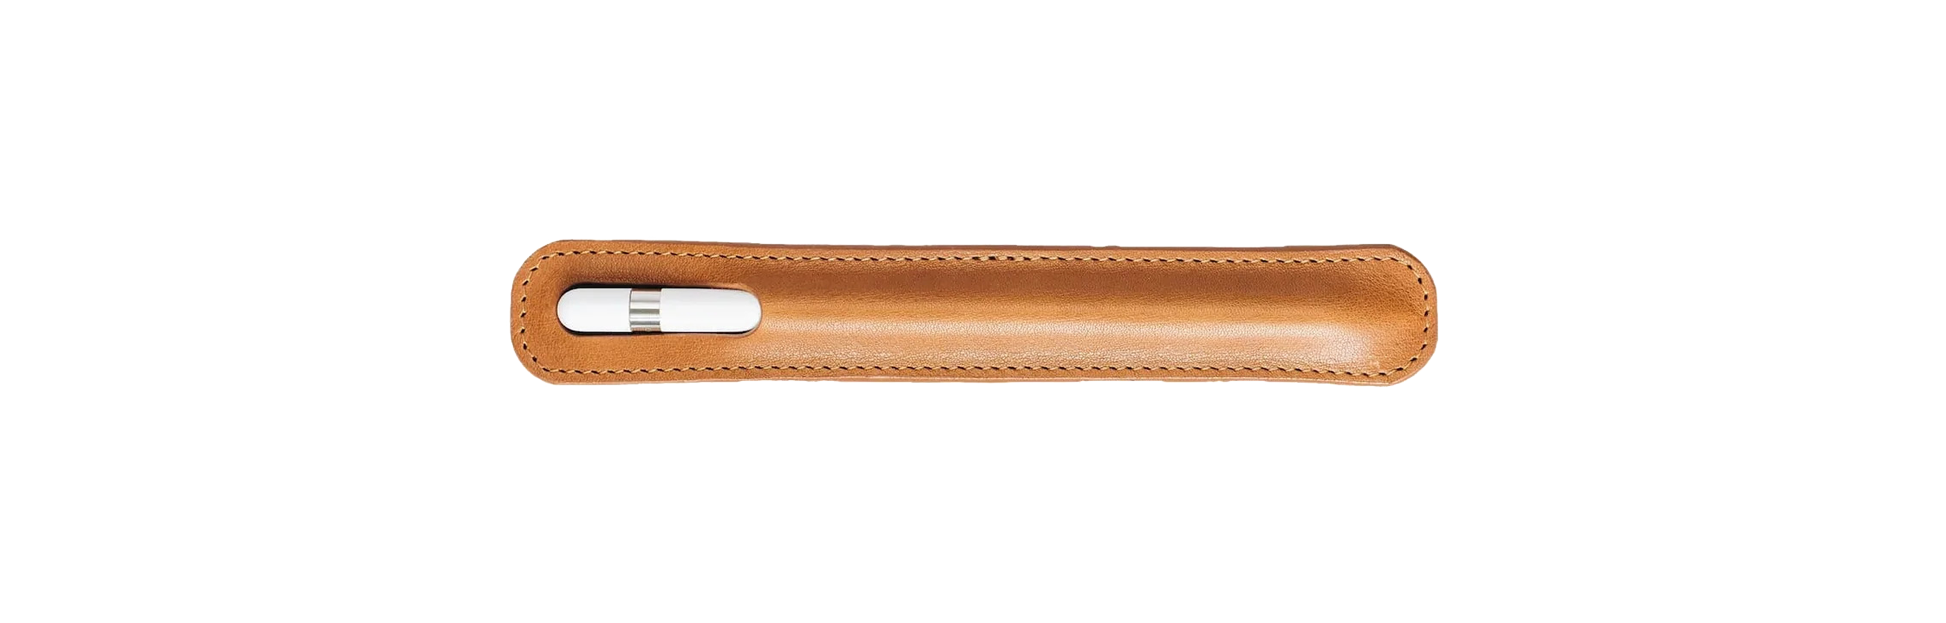 Apple pencil case front tan 1 b86d5c61-5182-42b0-900c-02e5eed451d6